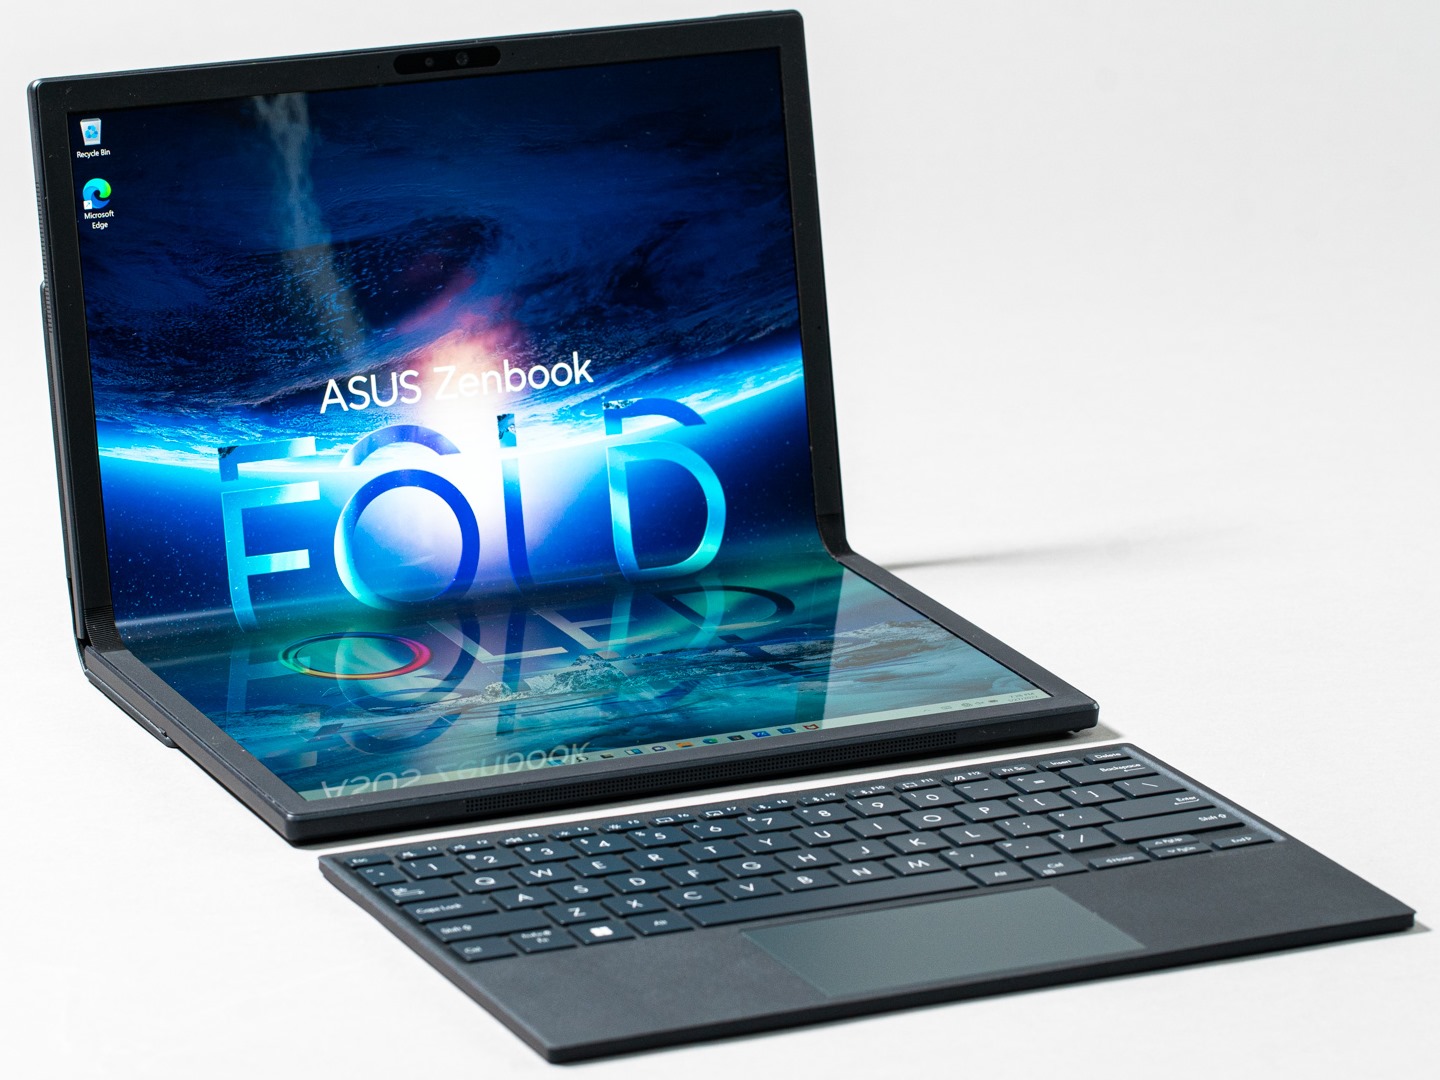 Asus Zenbook Fold OLED具有多種不同使用樣態，可以透過觸控螢幕或配無線鍵盤操作。